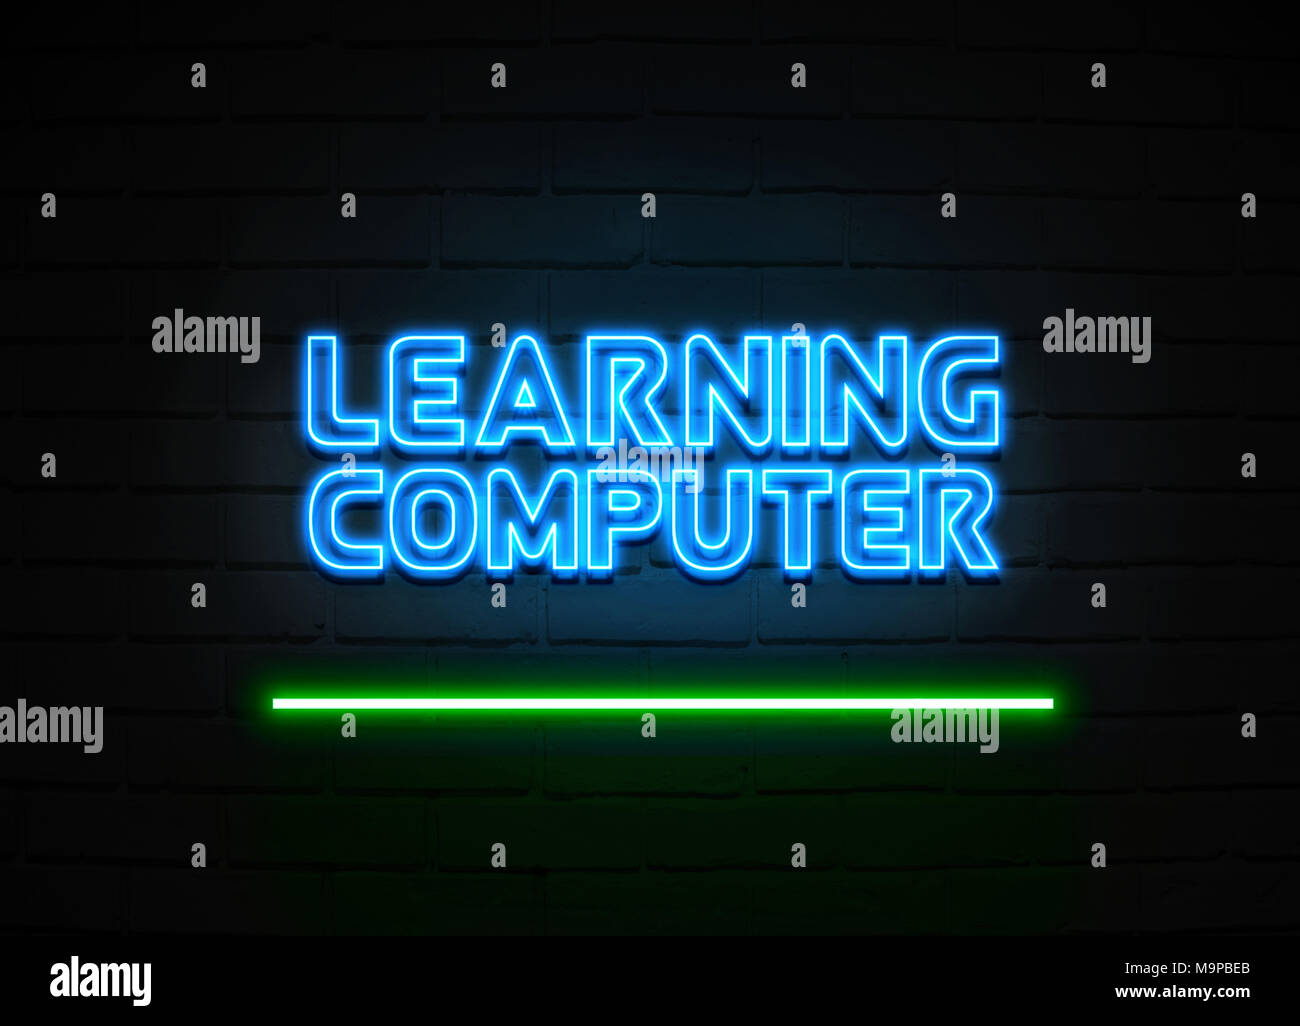 Lernen Computer Leuchtreklame - glühende Leuchtreklame auf brickwall Wand - 3D-Royalty Free Stock Illustration dargestellt. Stockfoto